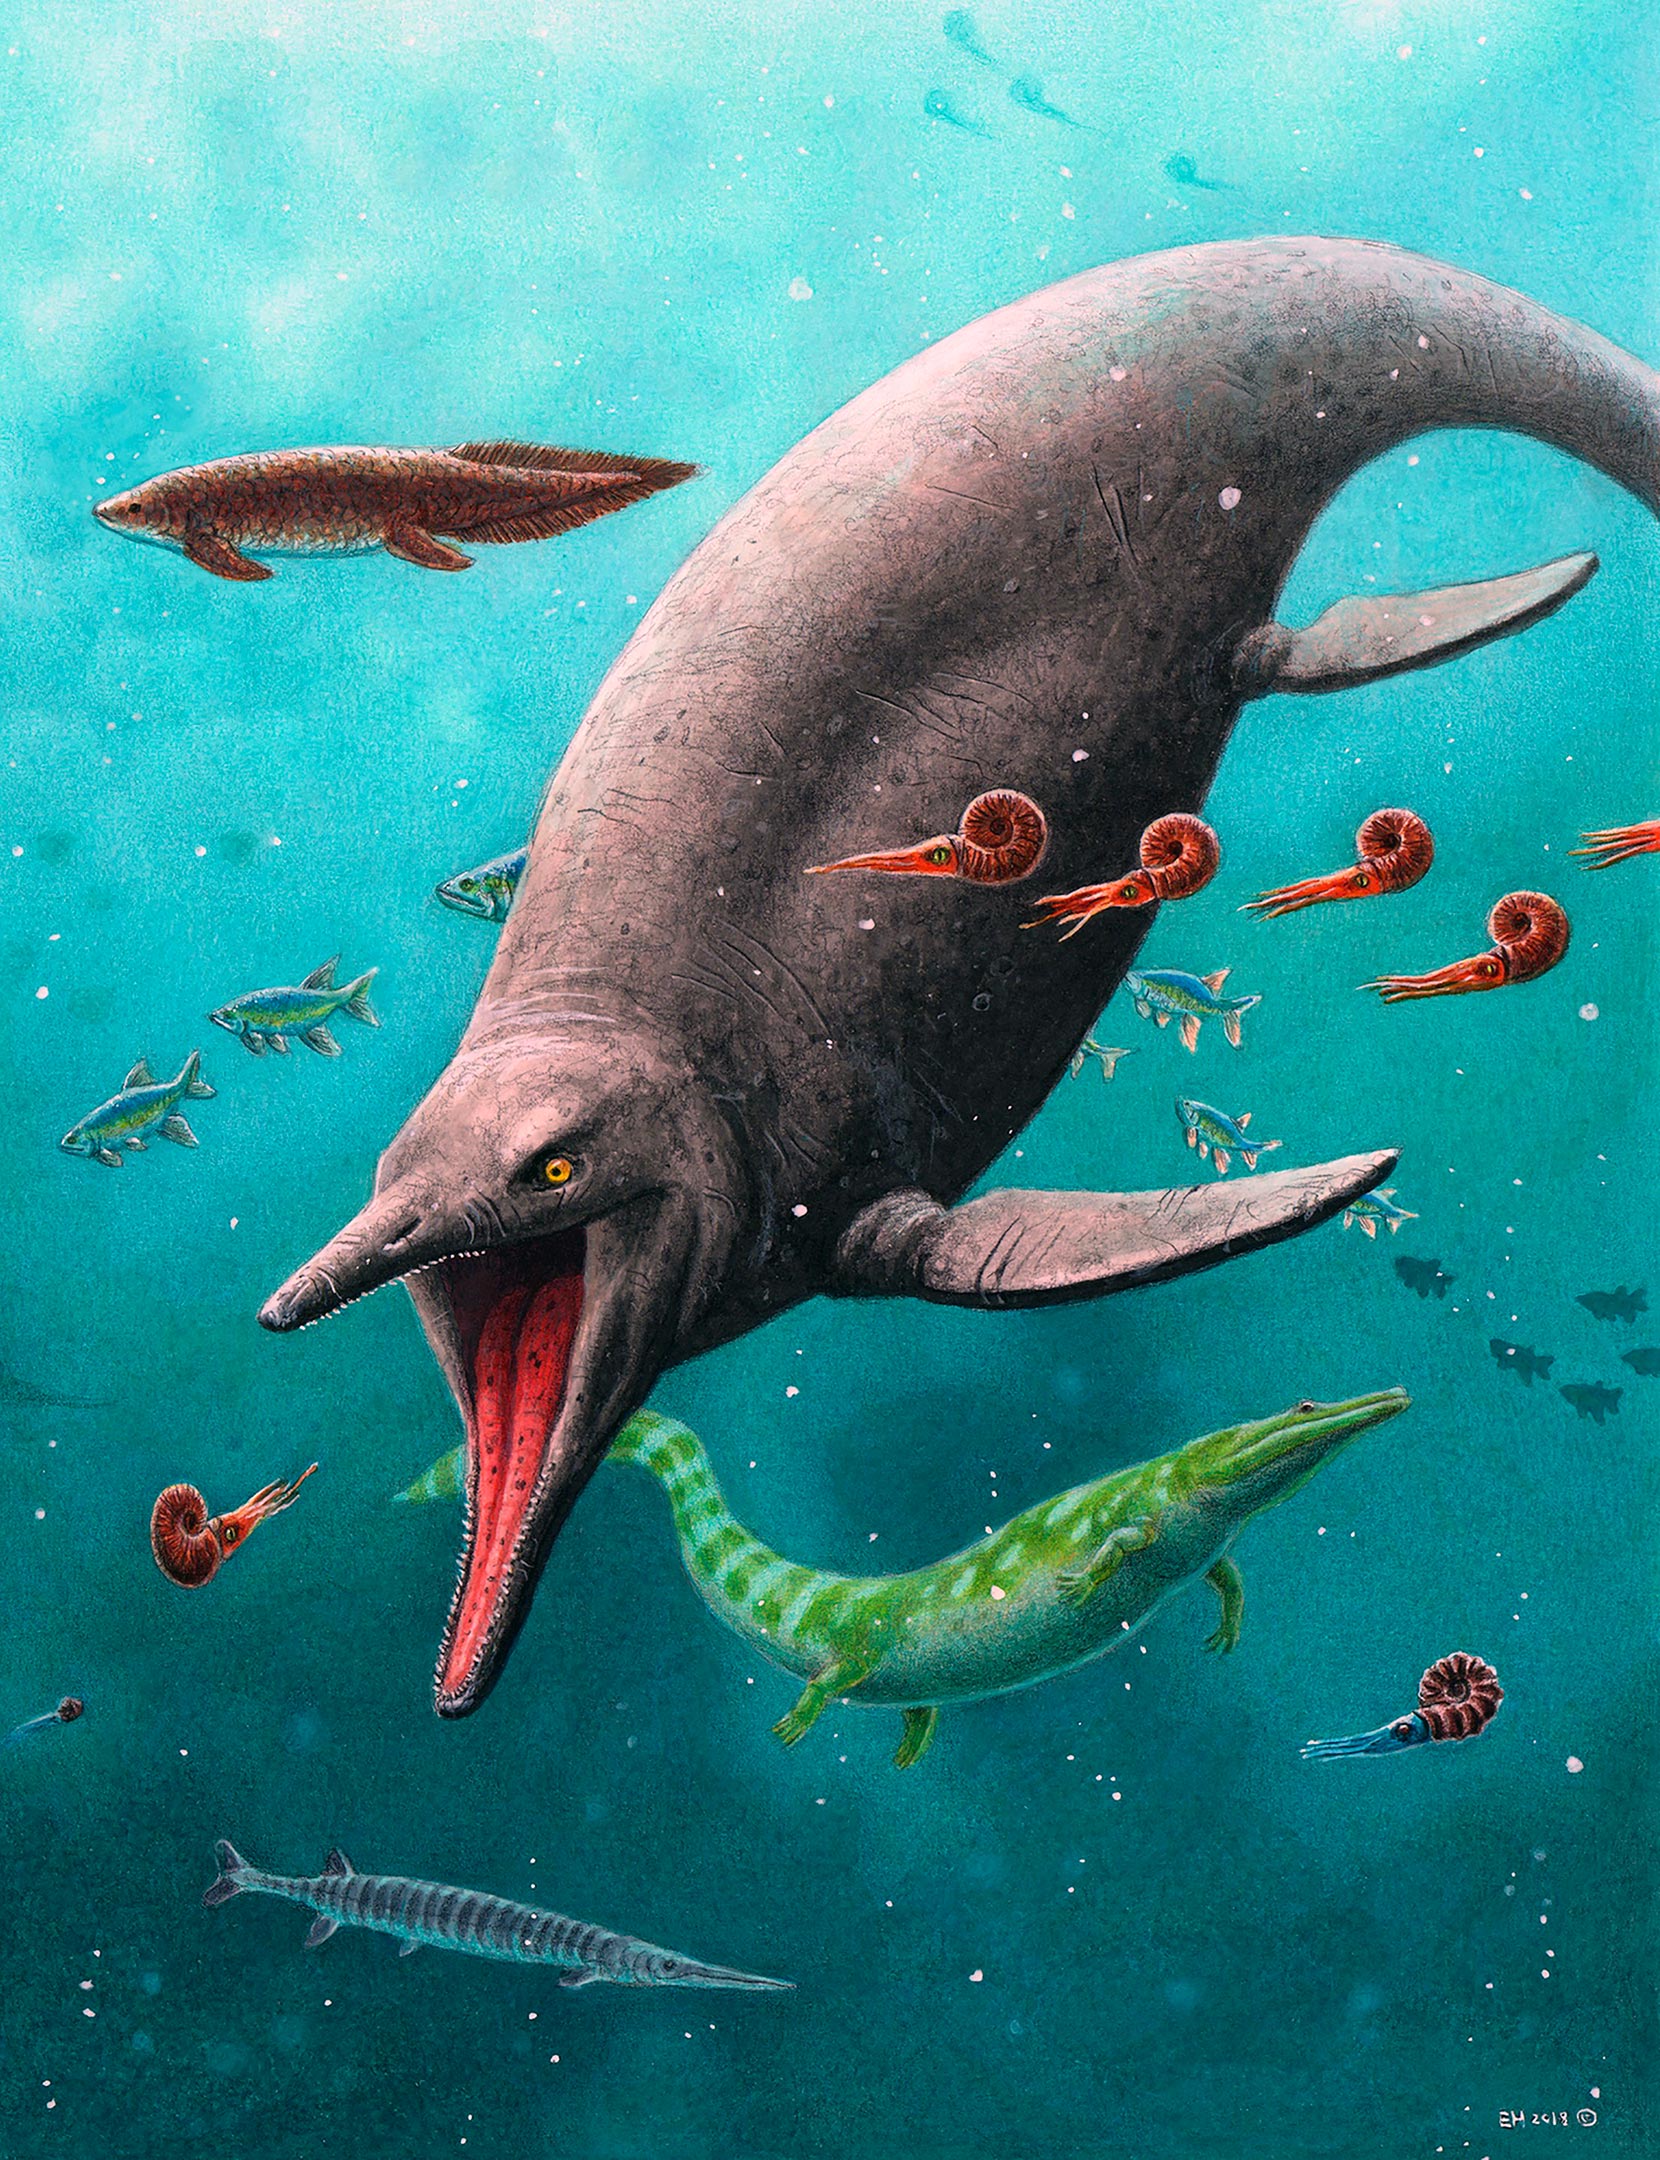 Monstruo marino de la era de los dinosaurios encontrado en una remota isla del Ártico